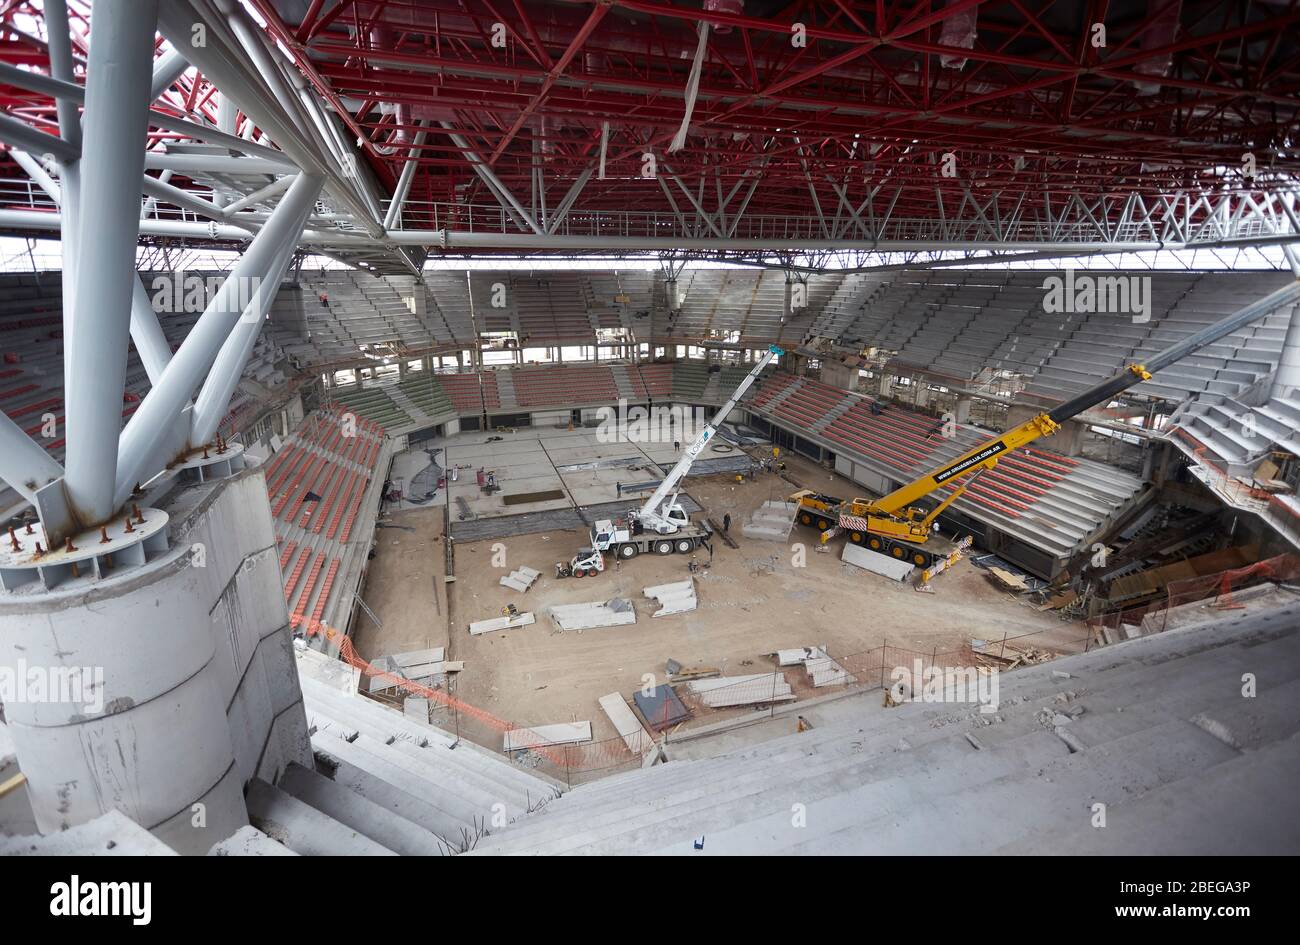 MENDOZA, ARGENTINIEN, 10. Juni 2015. Aconcagua Arena, Bau eines Sportstadions mit einer überdachten Fläche von 23,000 Quadratmetern und einer Kapazität von 8,5 Stockfoto